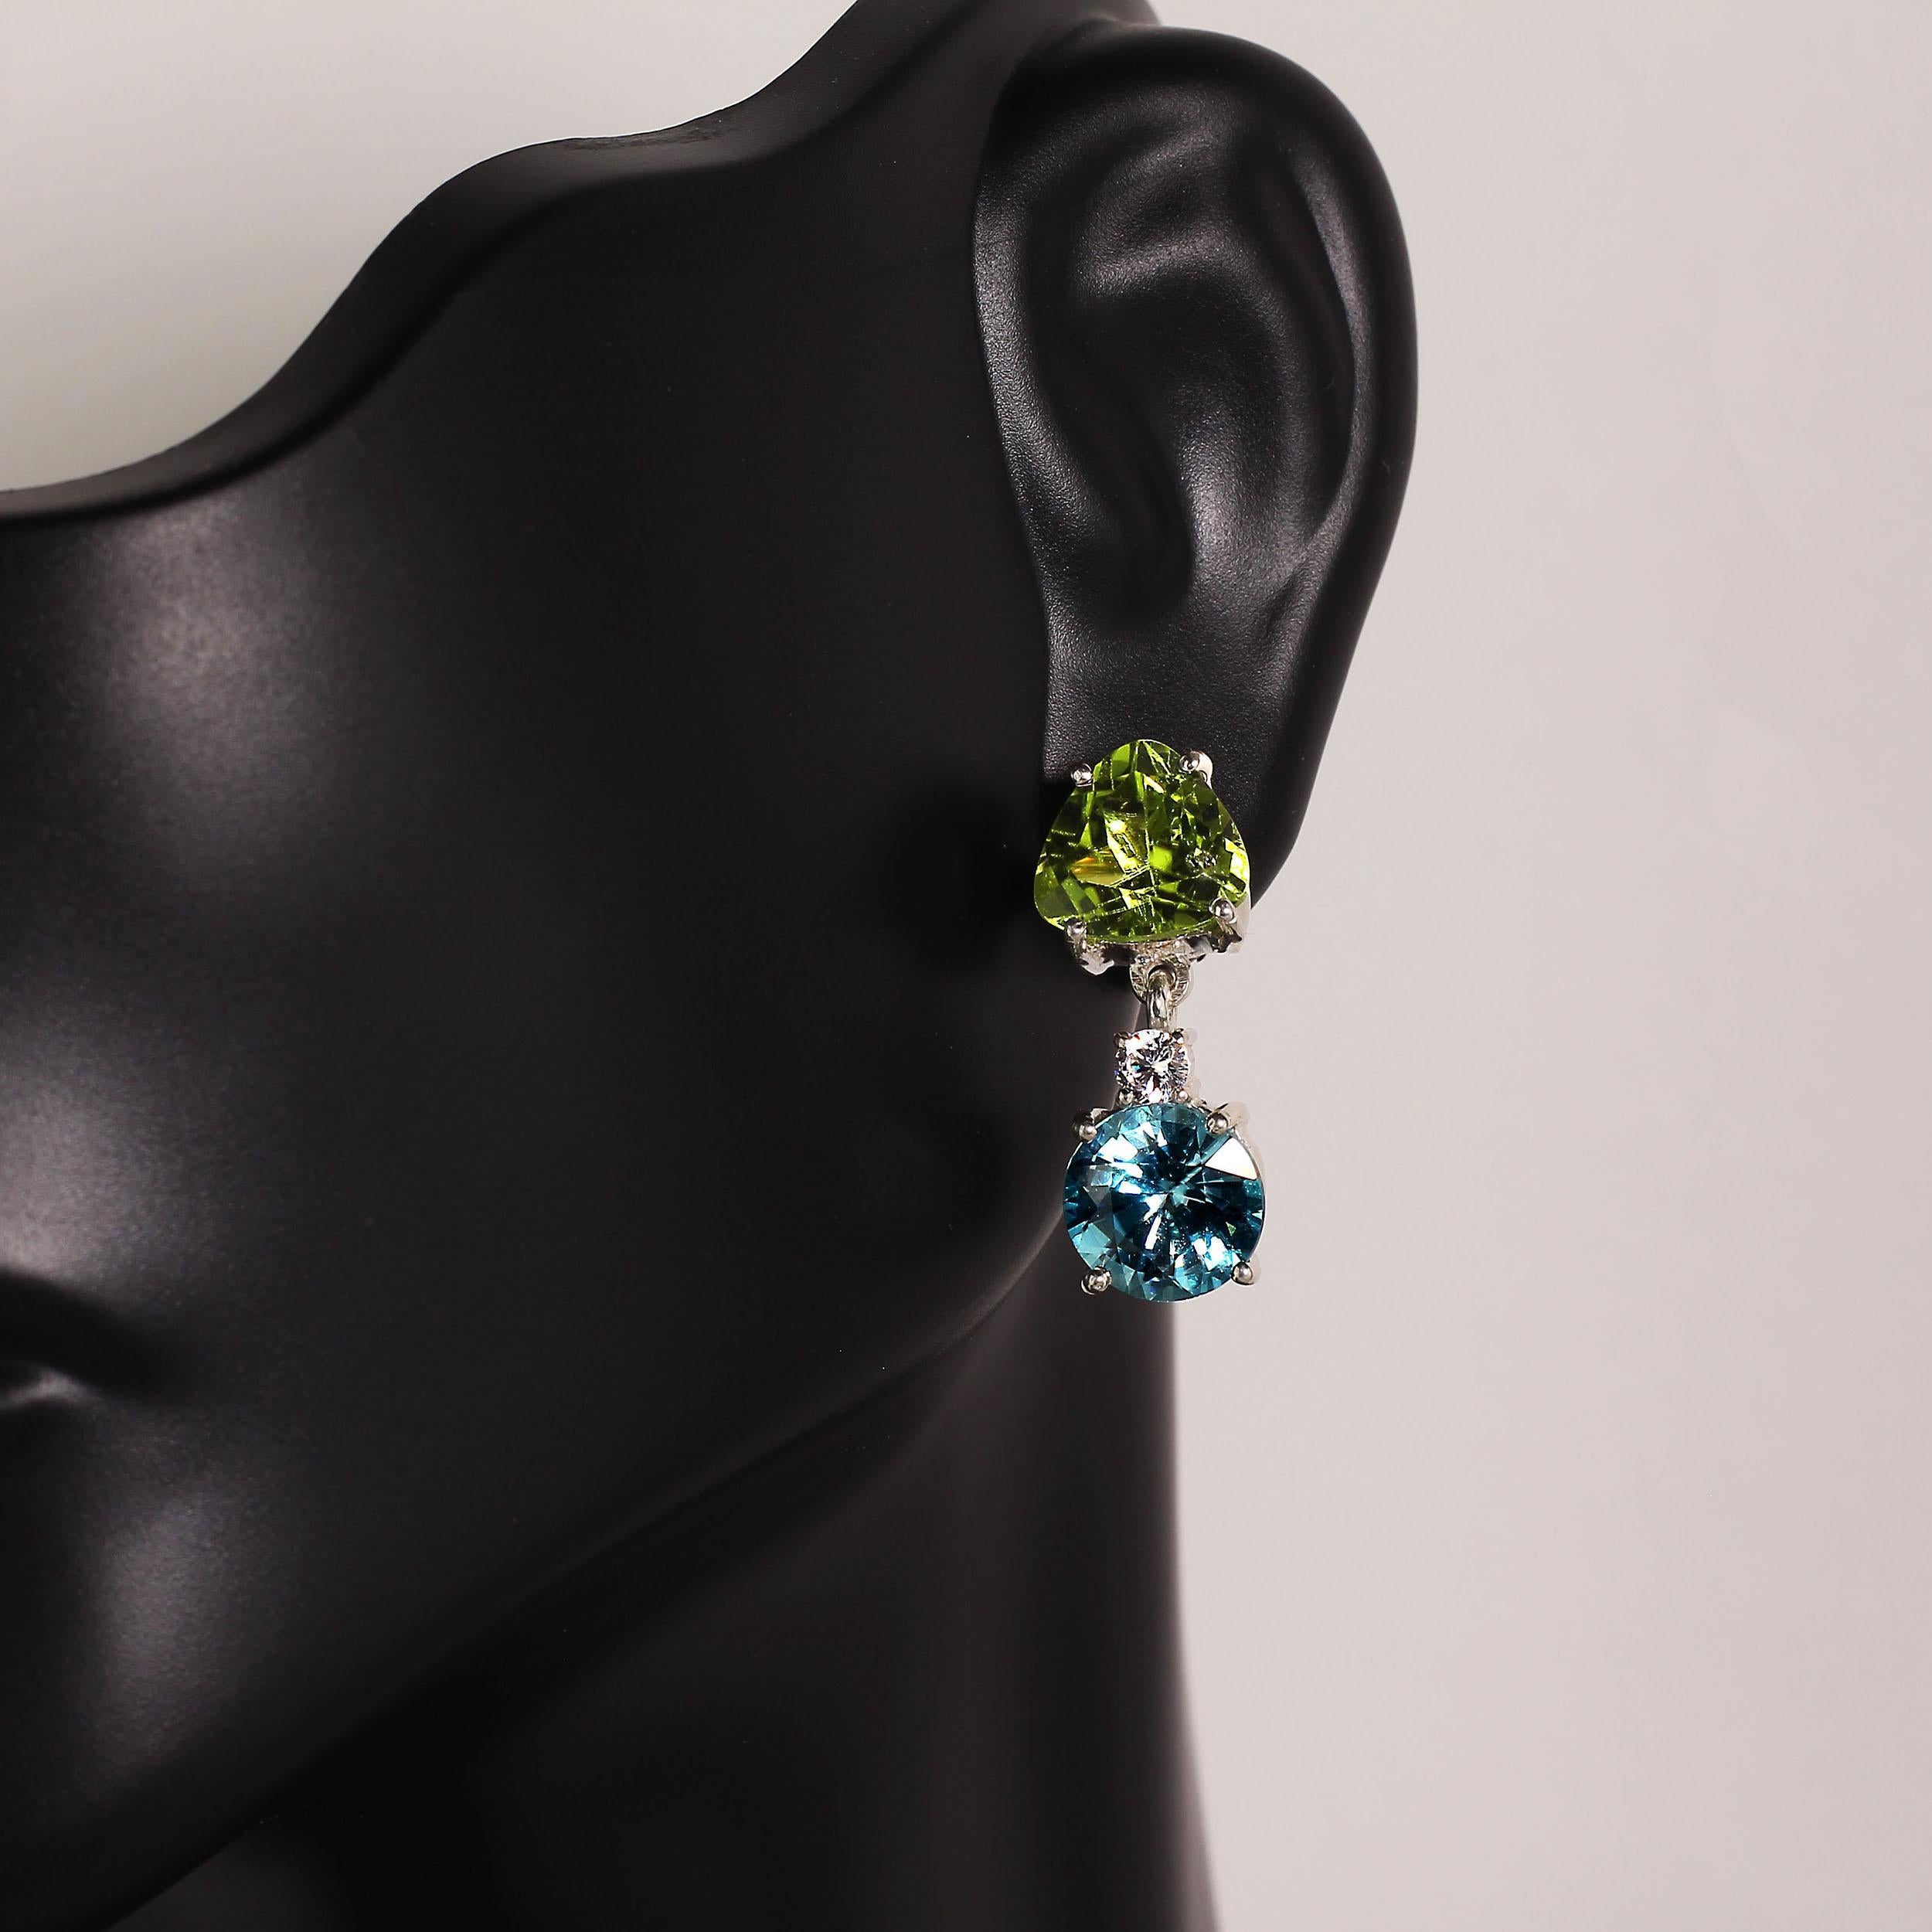 Lebendiger grüner Peridot und blauer Zirkon als Ohrhänger. Diese schwungvollen Ohrringe bestehen aus einem Trillionen Peridot, einem weißen kambodschanischen Zirkon und einem runden hellblauen Zirkon. Die handgefertigte Fassung aus Sterlingsilber